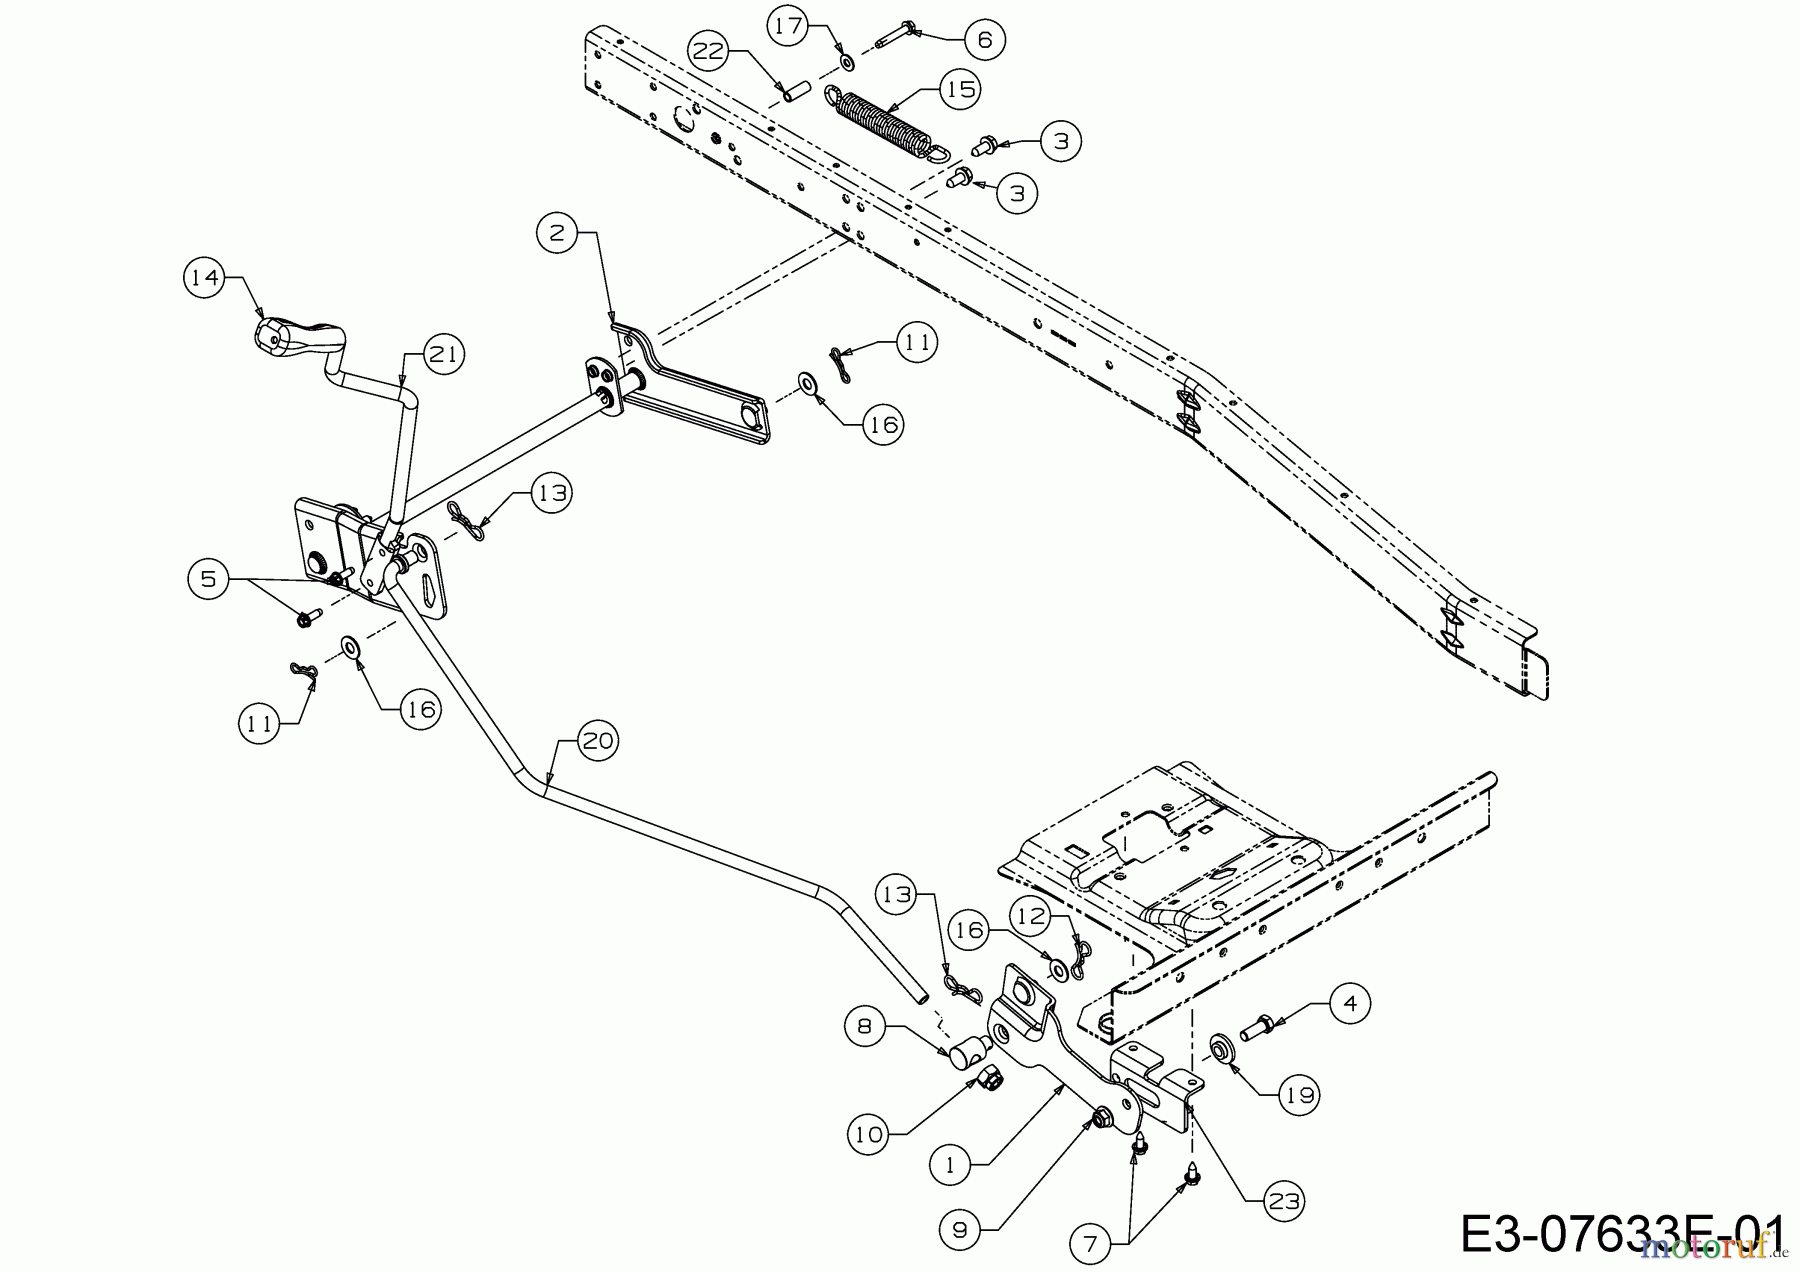  WOLF-Garten Expert Rasentraktoren Expert Scooter Pro 13B226HD650  (2017) Mähwerksaushebung